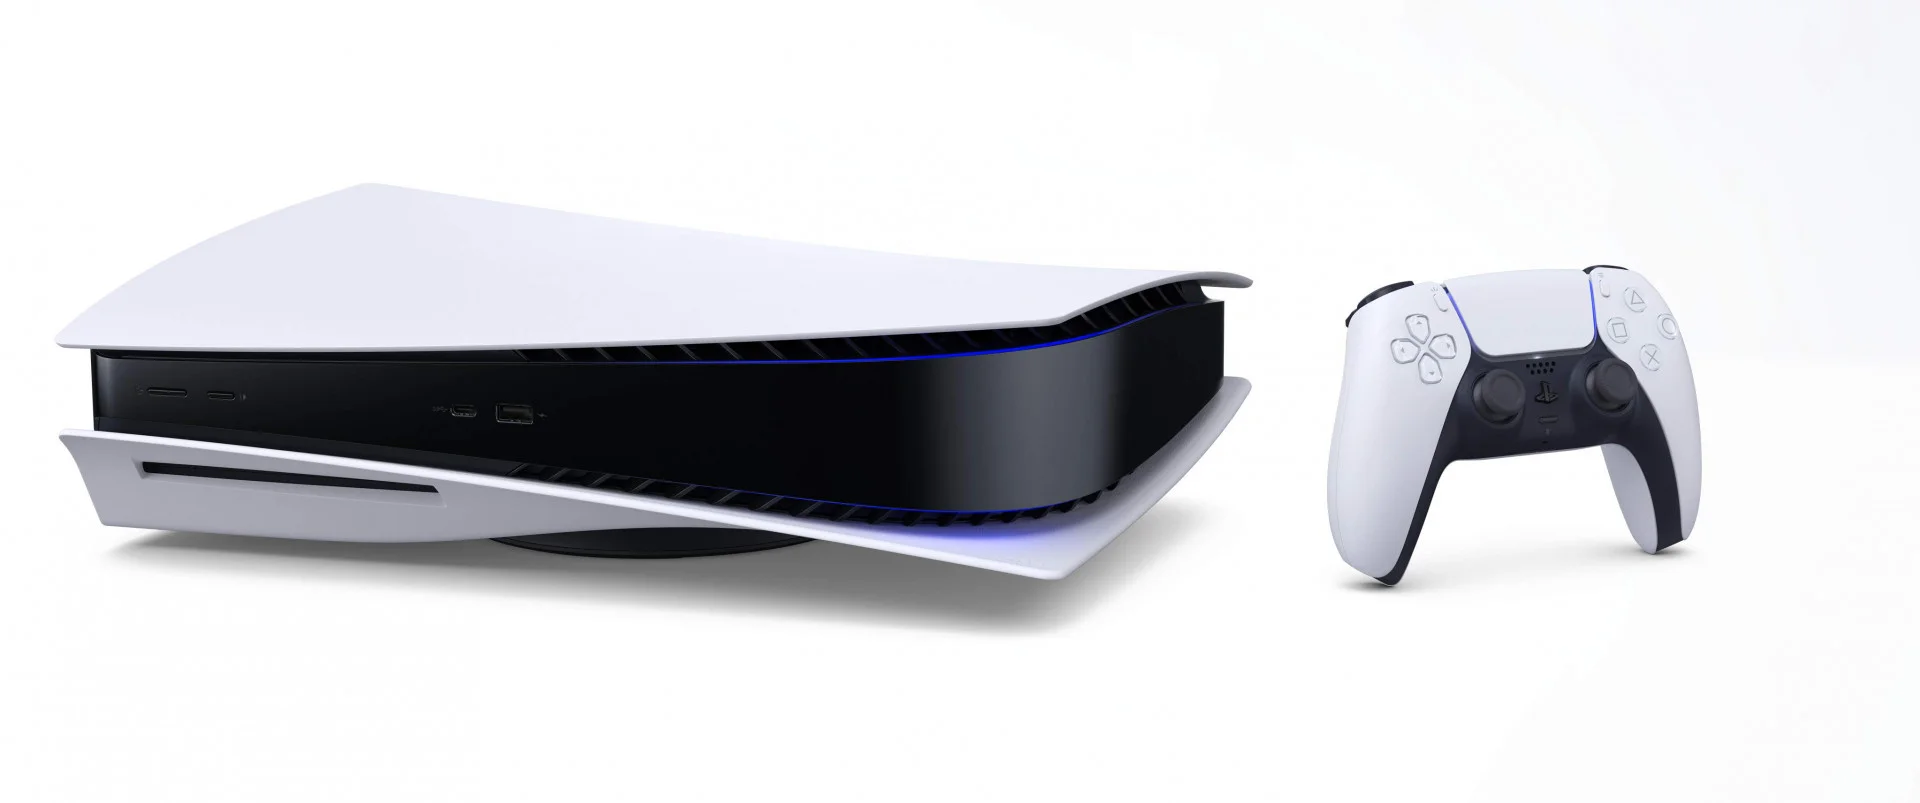 Промо PlayStation 5 в горизонтальном положении - фото 2